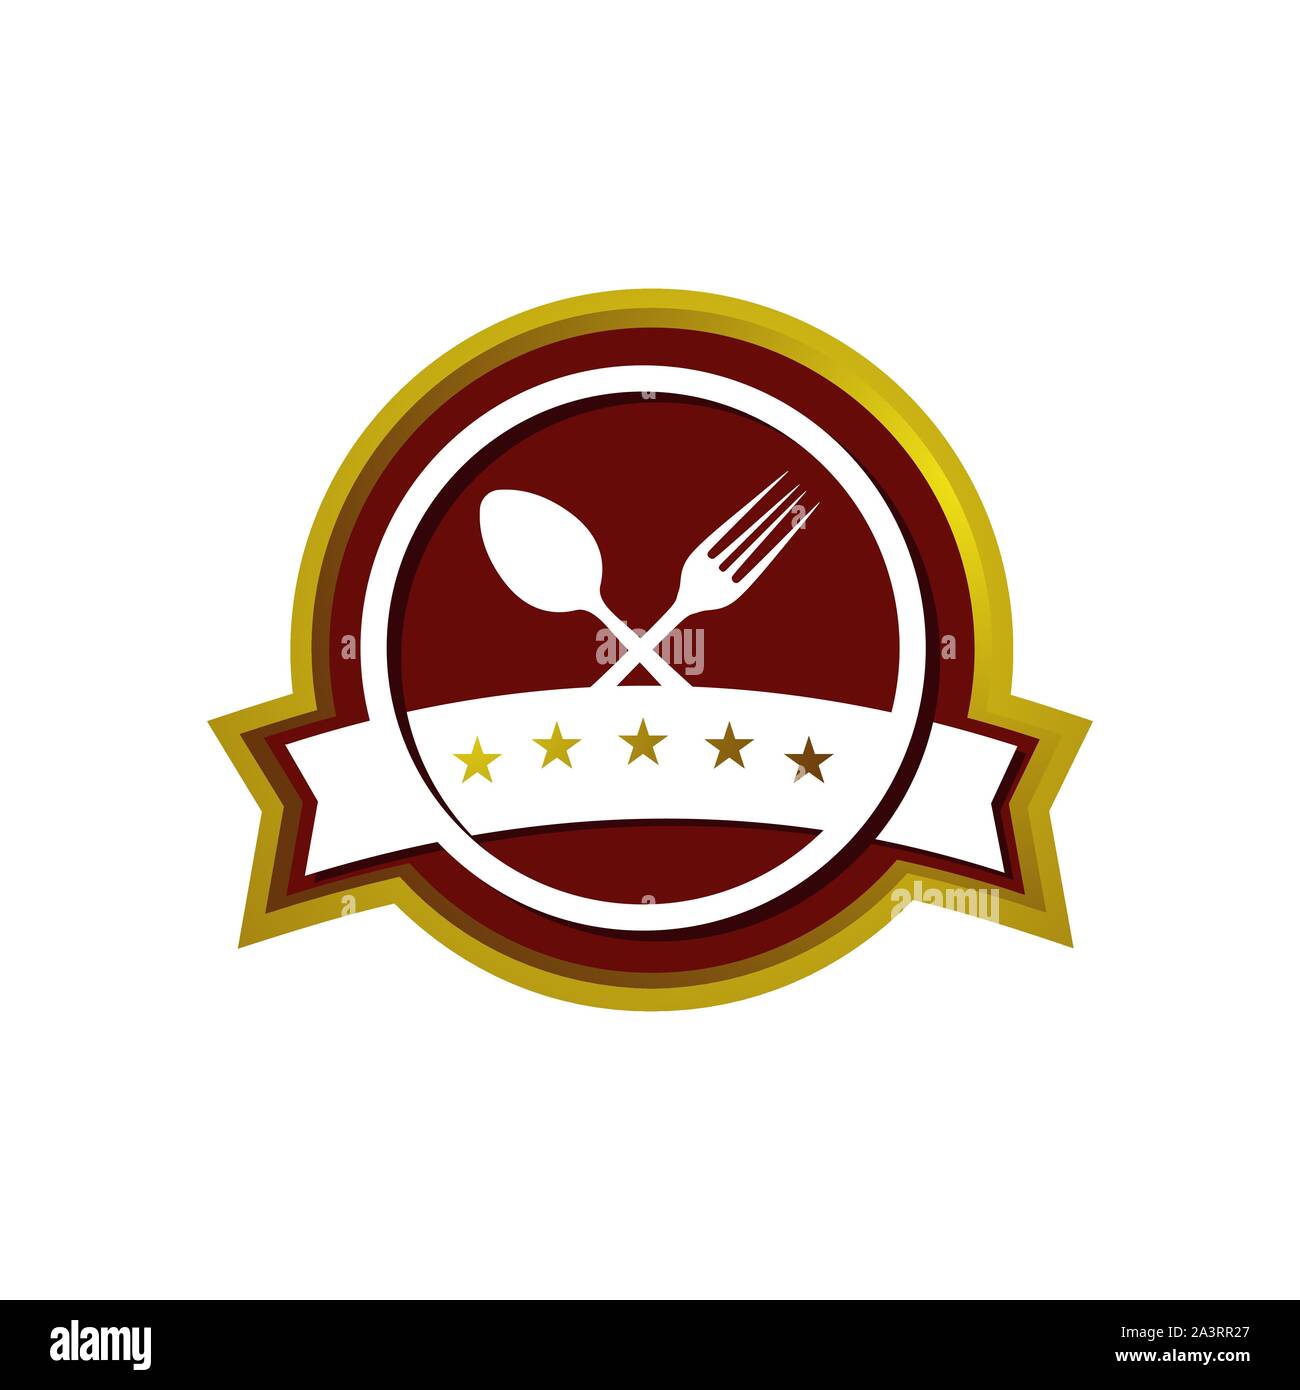 Popolari Cucchiaio e forchetta simbolo premium 5 star restaurant vettore emblema logo illustrazione Illustrazione Vettoriale